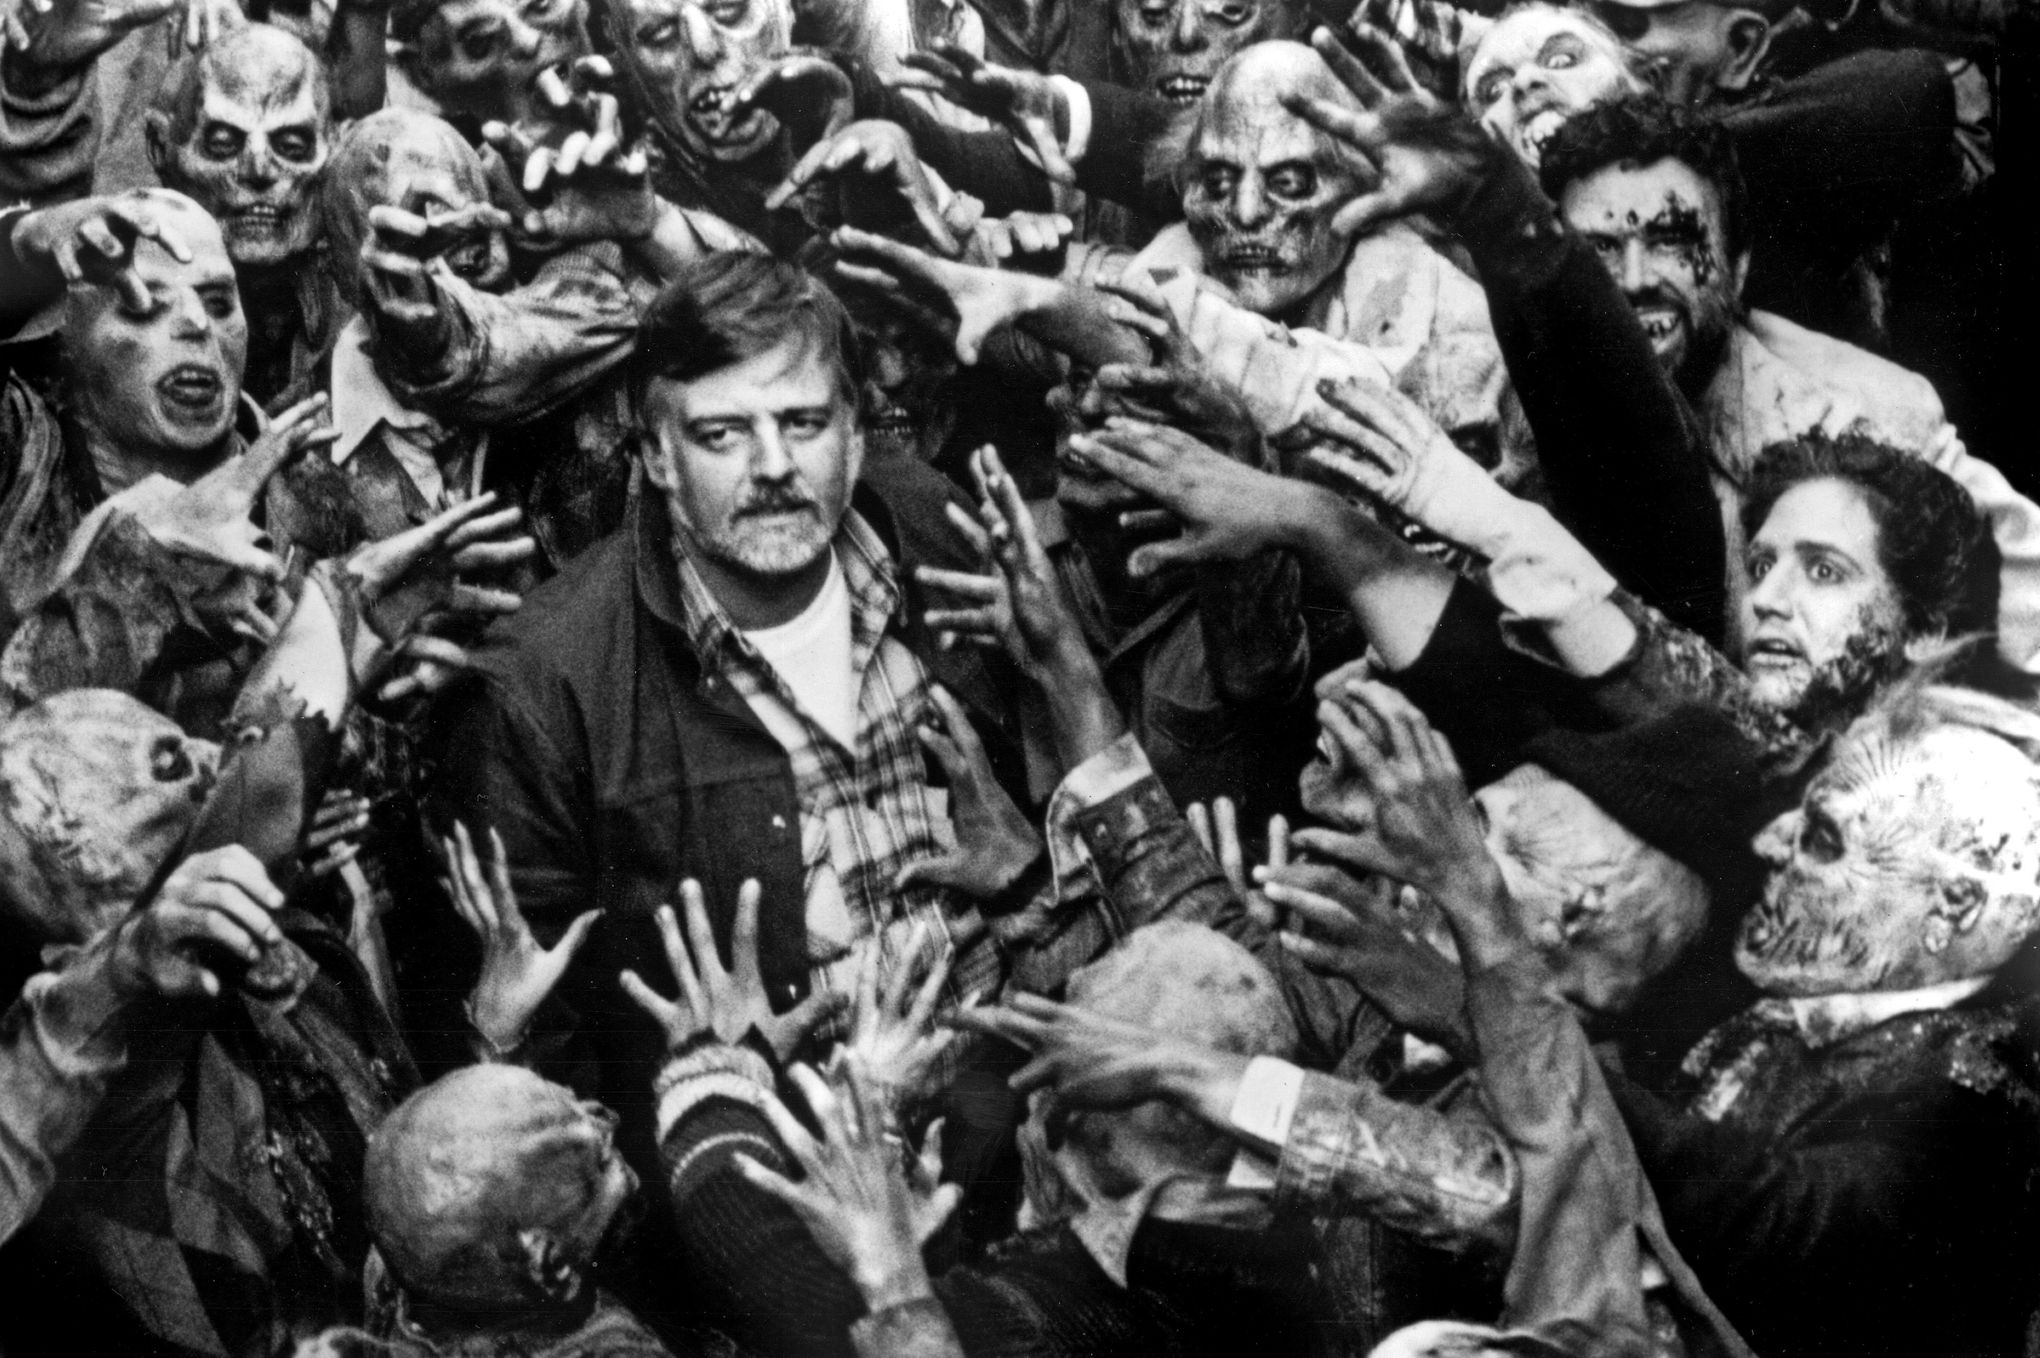 Résultat de recherche d'images pour "romero zombie"